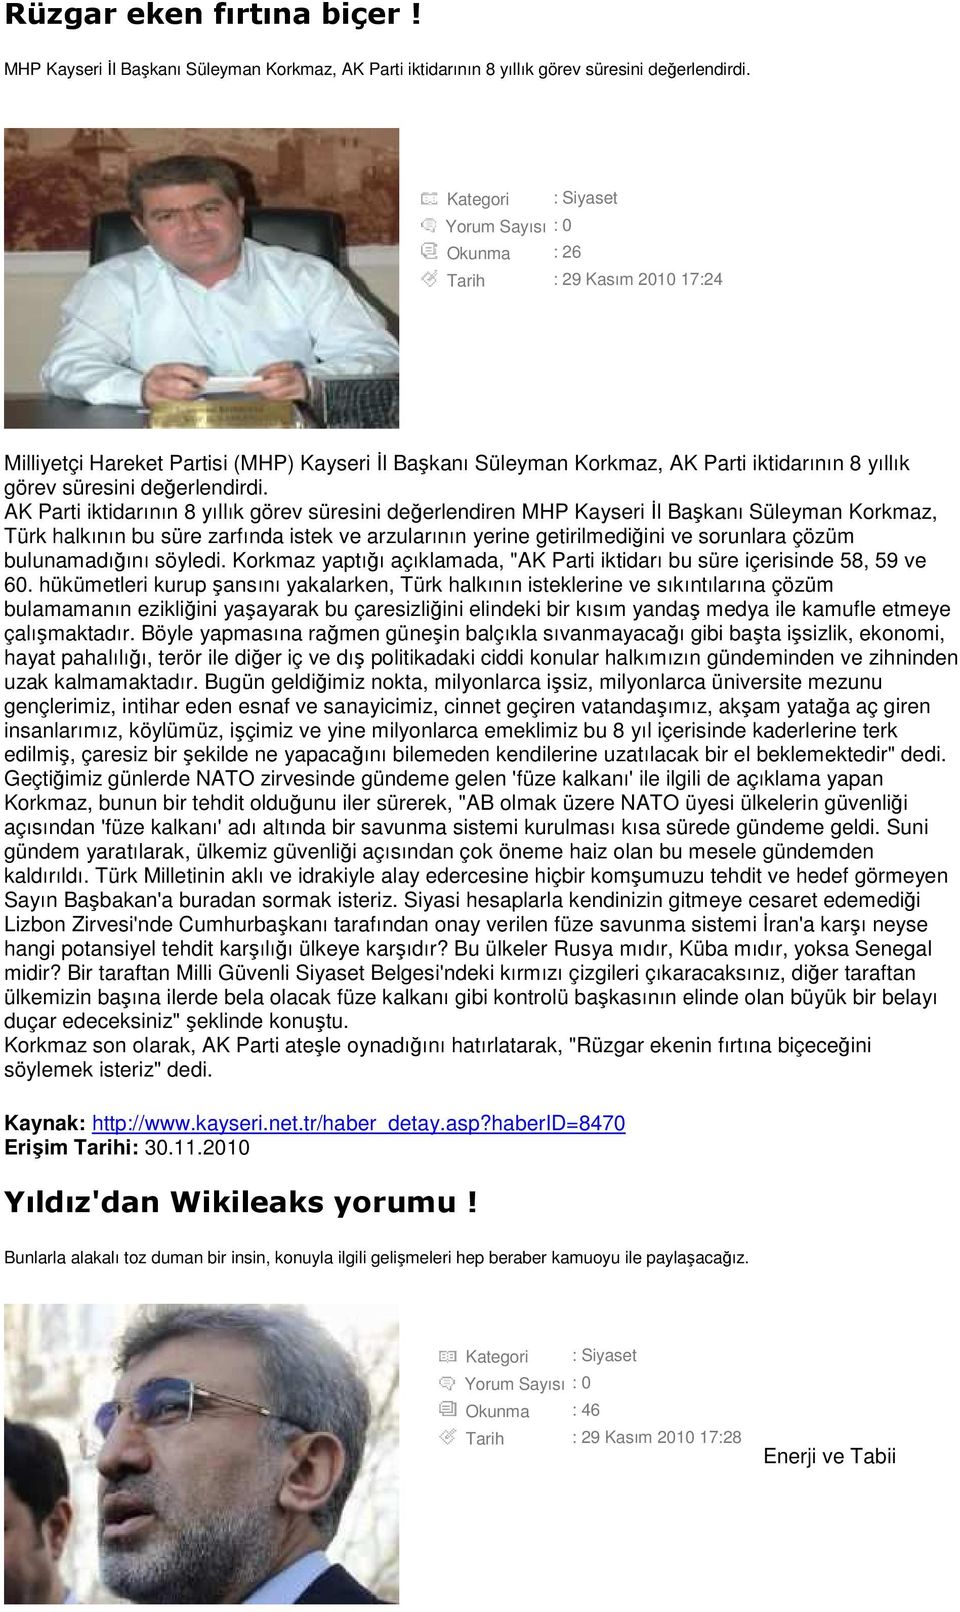 AK Parti iktidarının 8 yıllık görev süresini değerlendiren MHP Kayseri Đl Başkanı Süleyman Korkmaz, Türk halkının bu süre zarfında istek ve arzularının yerine getirilmediğini ve sorunlara çözüm